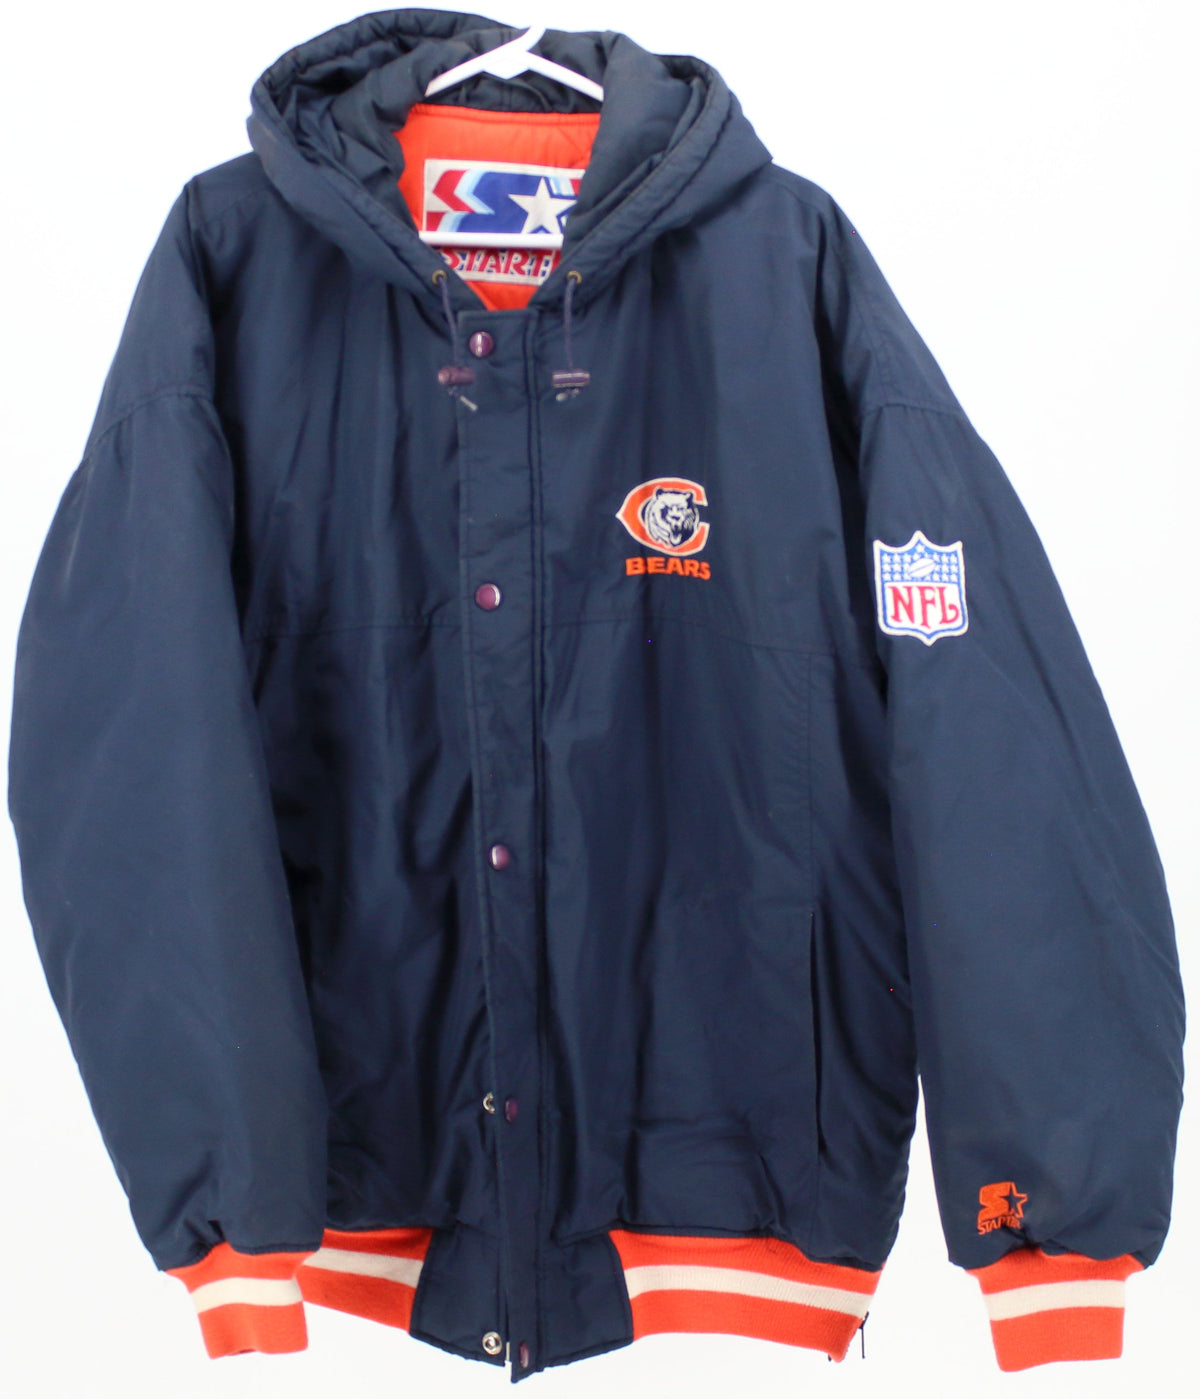 Starter NFL Bears Hooded Jacket